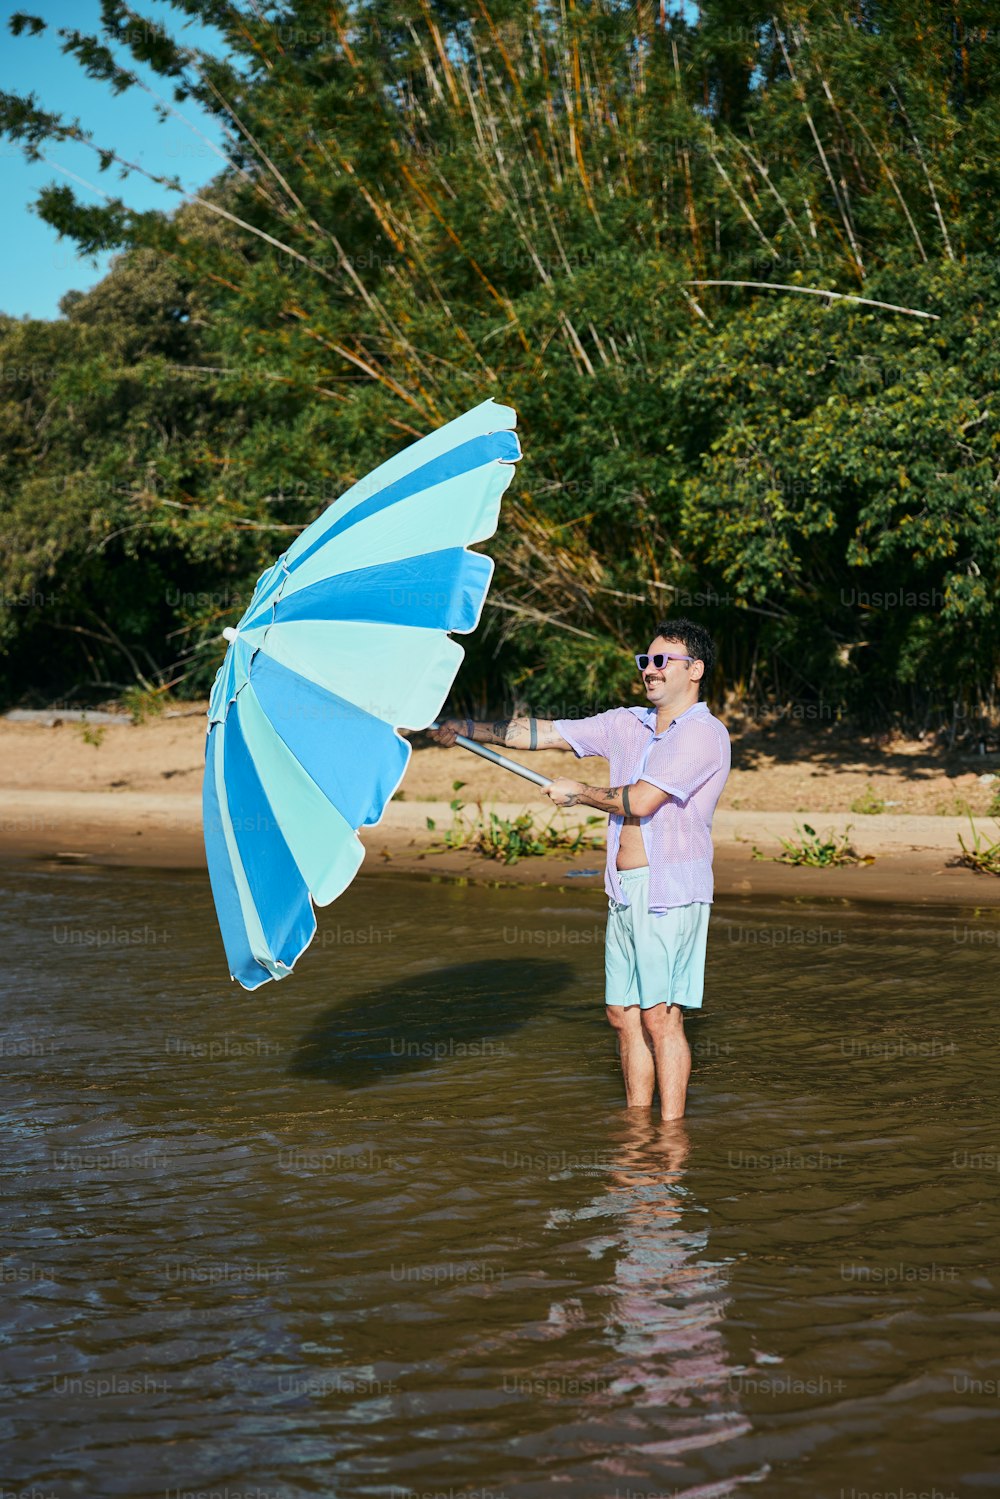 Ein Mann steht im Wasser und hält einen blau-weißen Regenschirm in der Hand